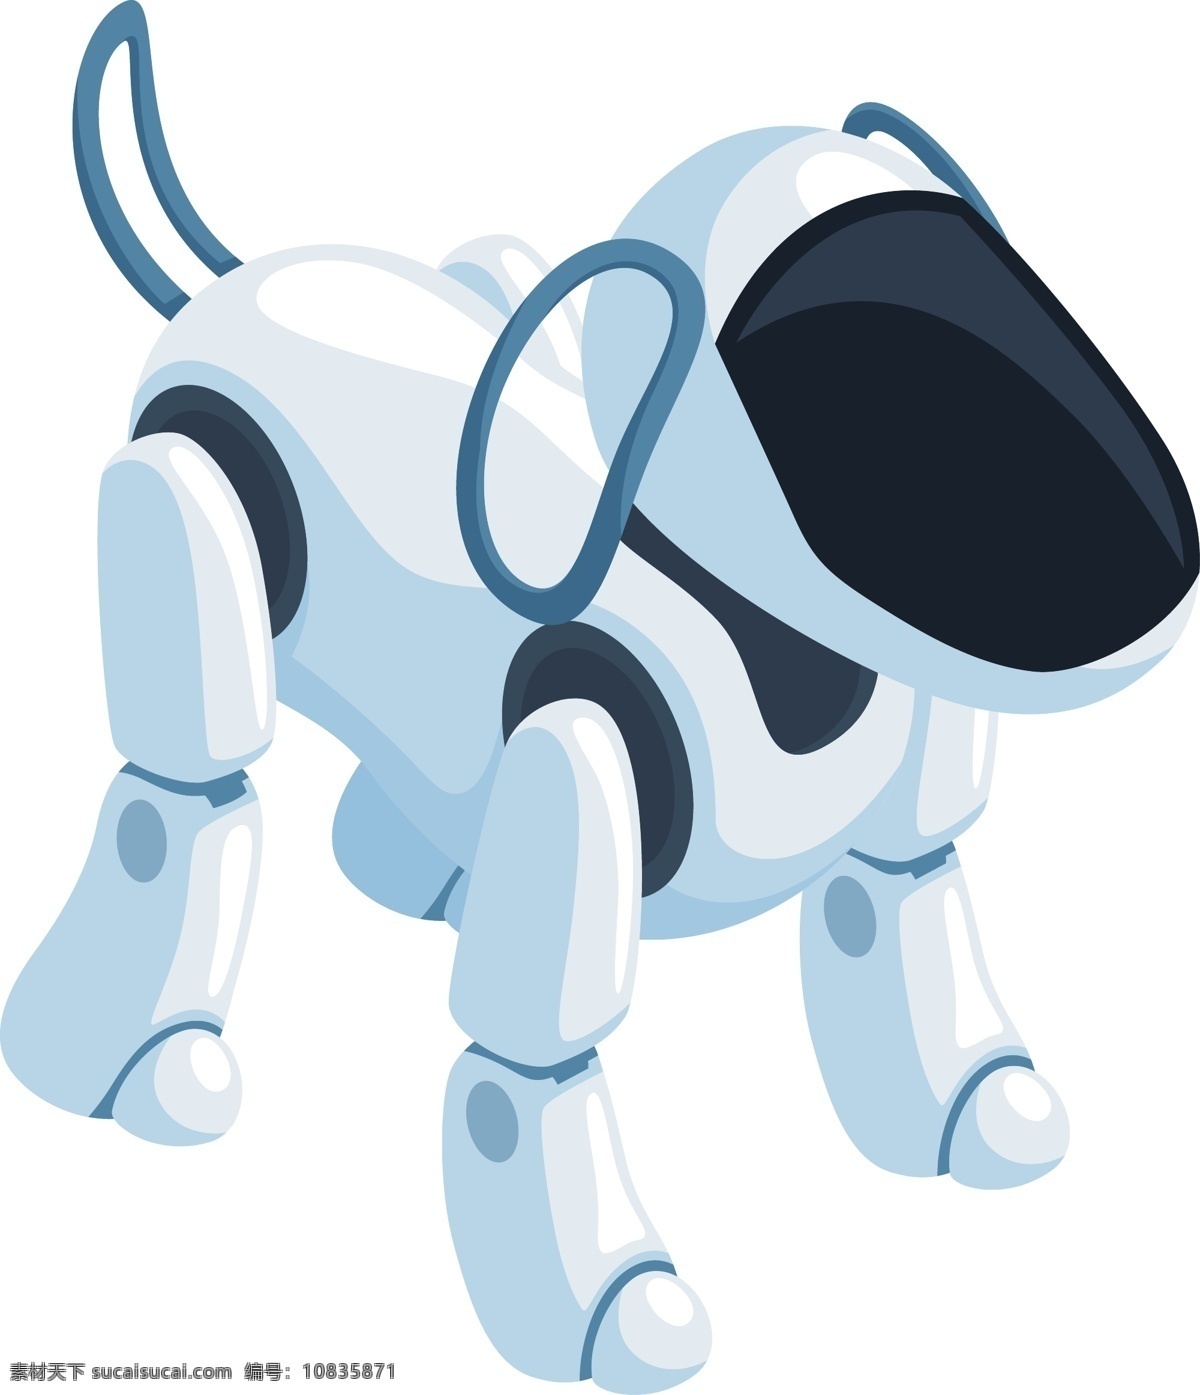 d 人工智能 机器 狗 2.5d 机器人 高科技 未来科技 仿生机器人